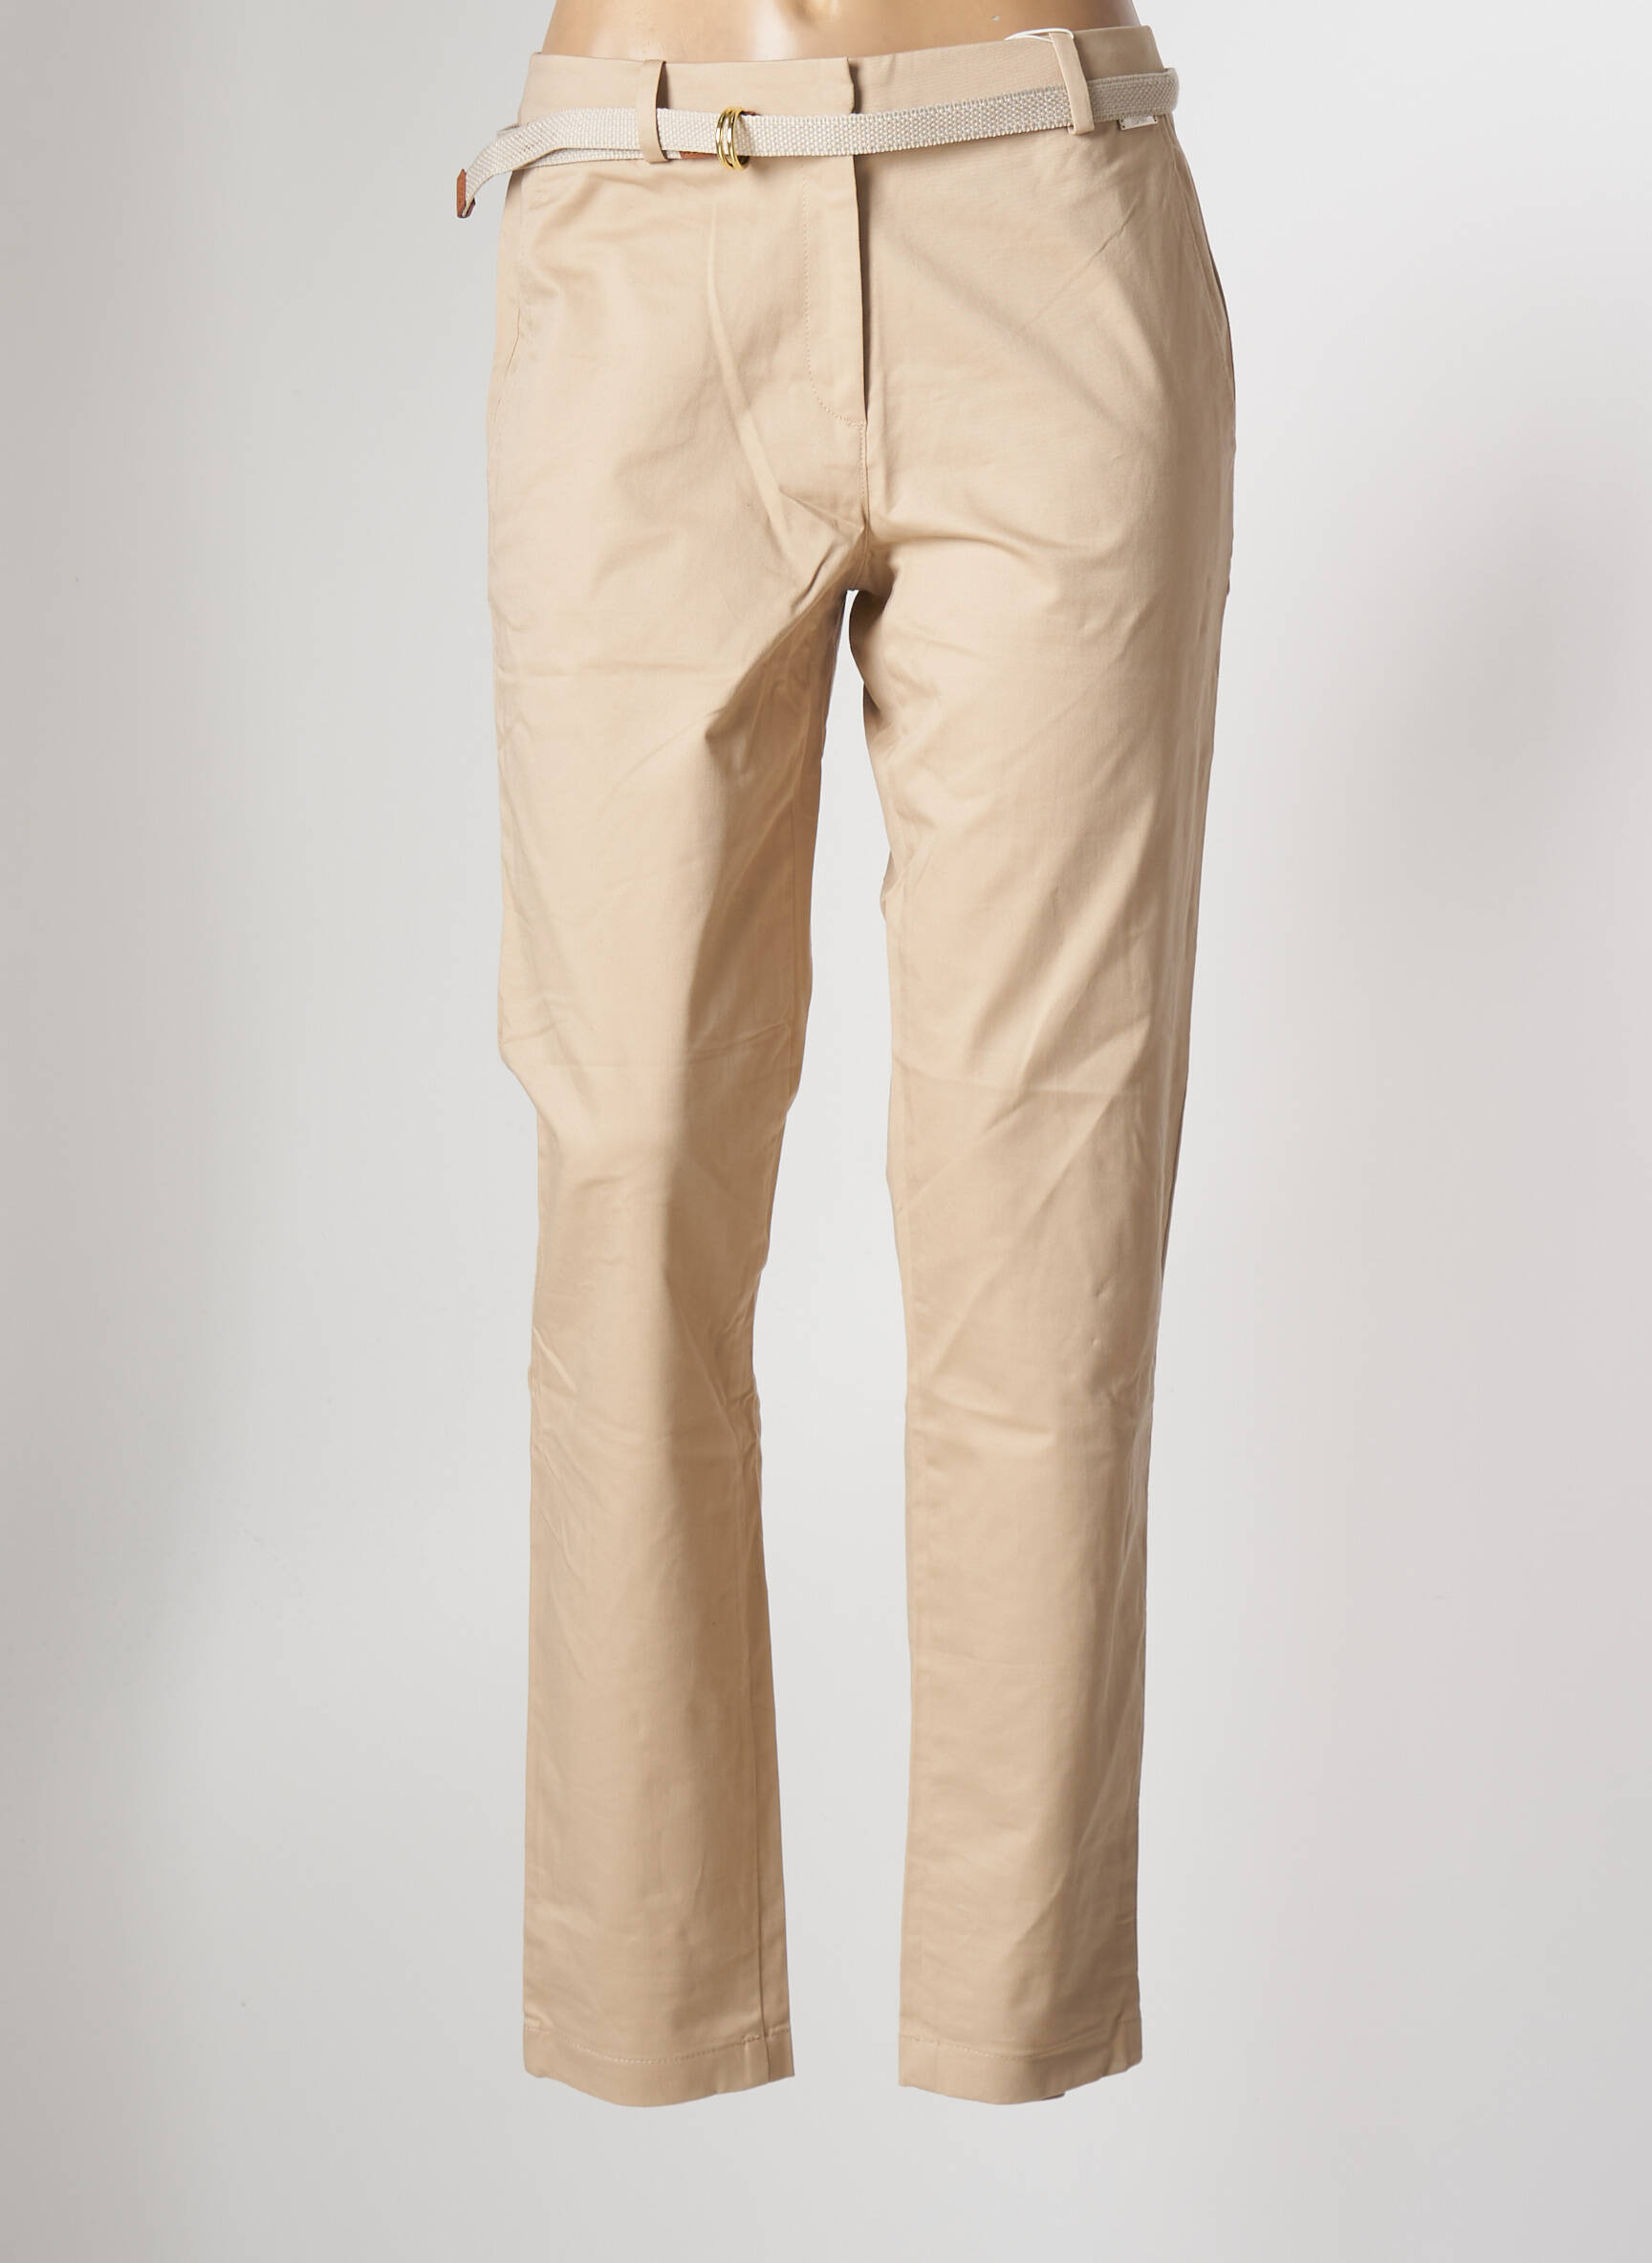 Pantalon cargo crème grisée femme - DistriCenter